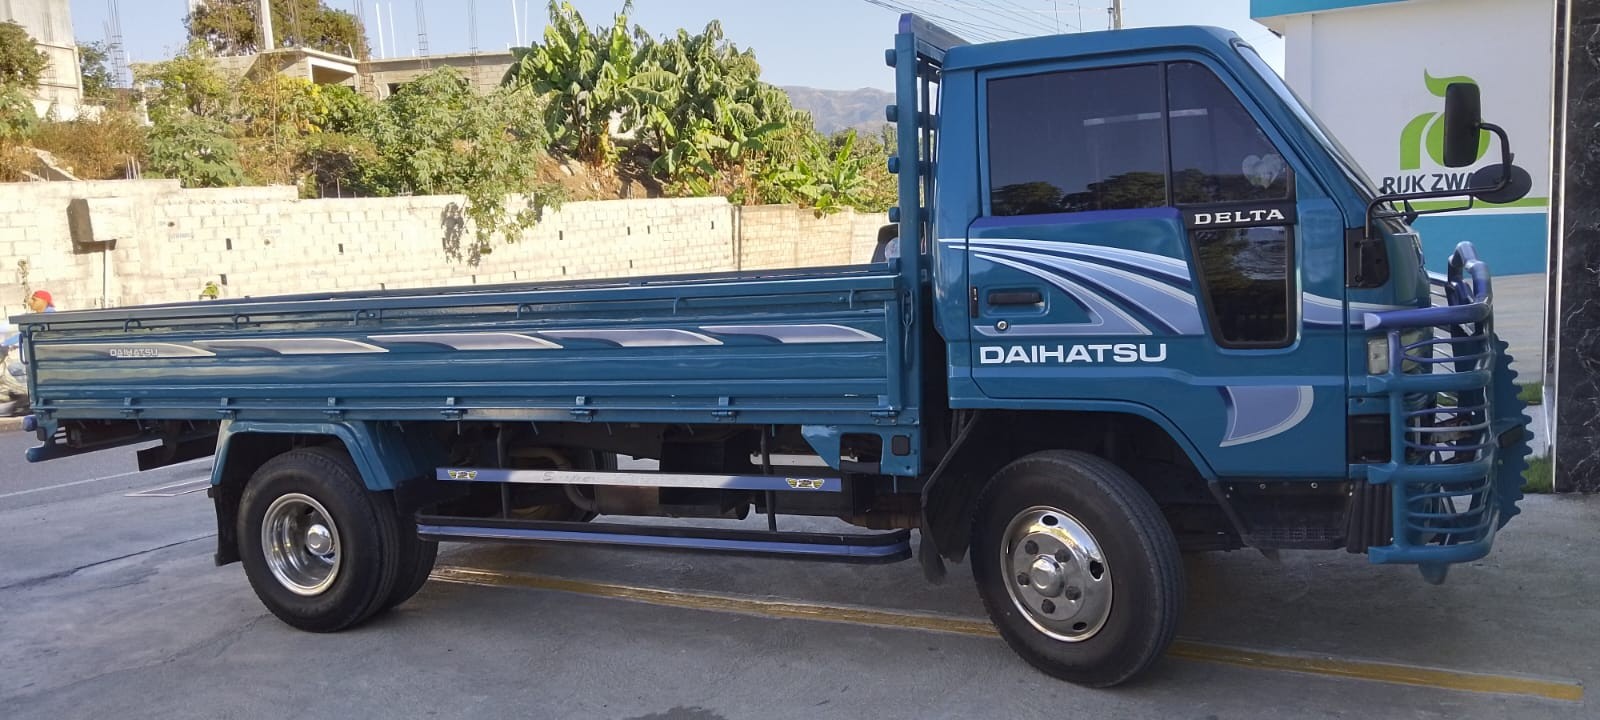 camiones y vehiculos pesados - Daihatsu Delta 2003 Cama Larga Cara Ancha 3